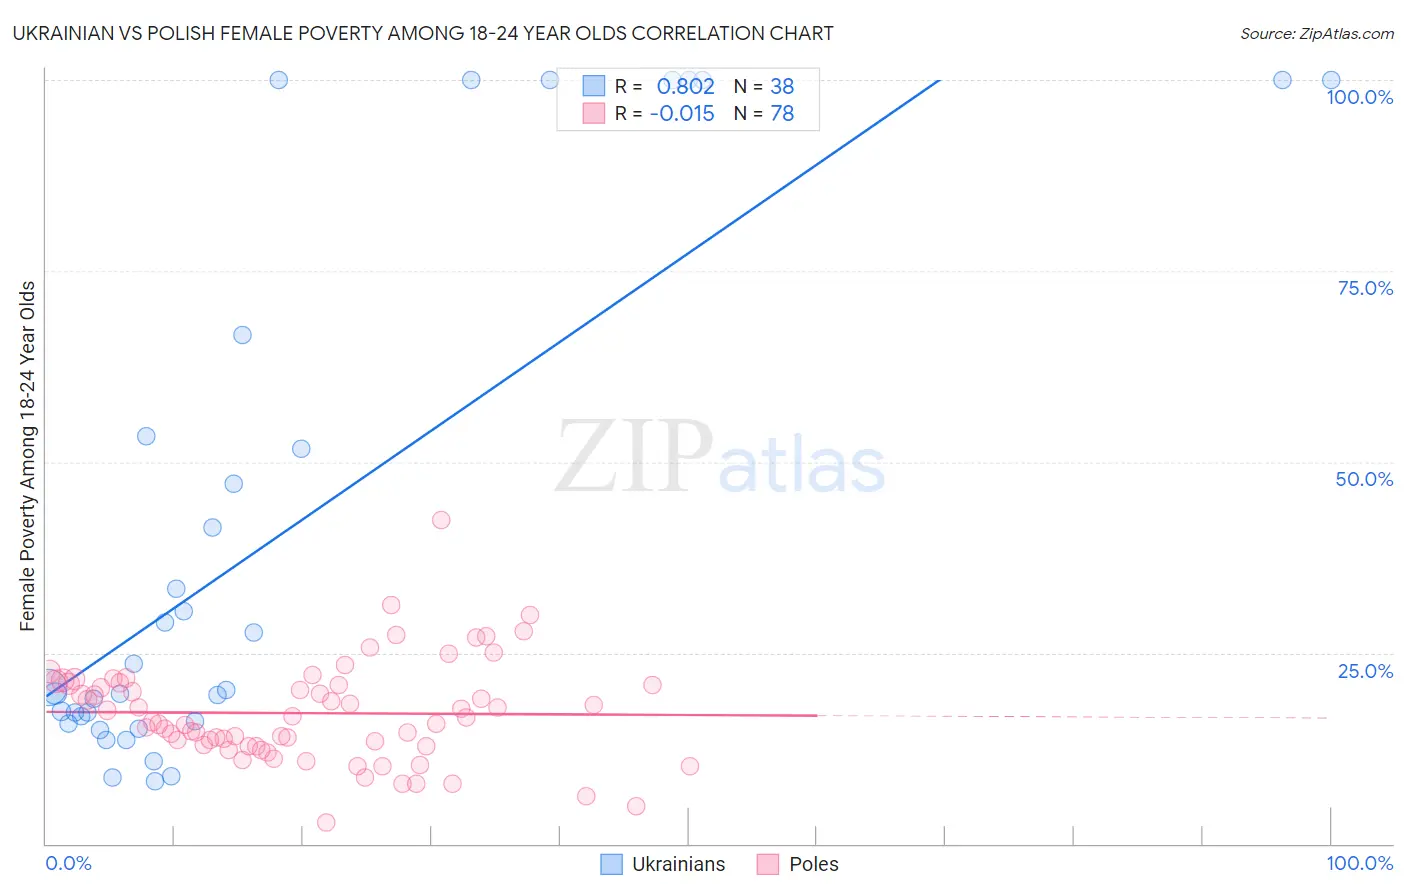 Ukrainian vs Polish Female Poverty Among 18-24 Year Olds